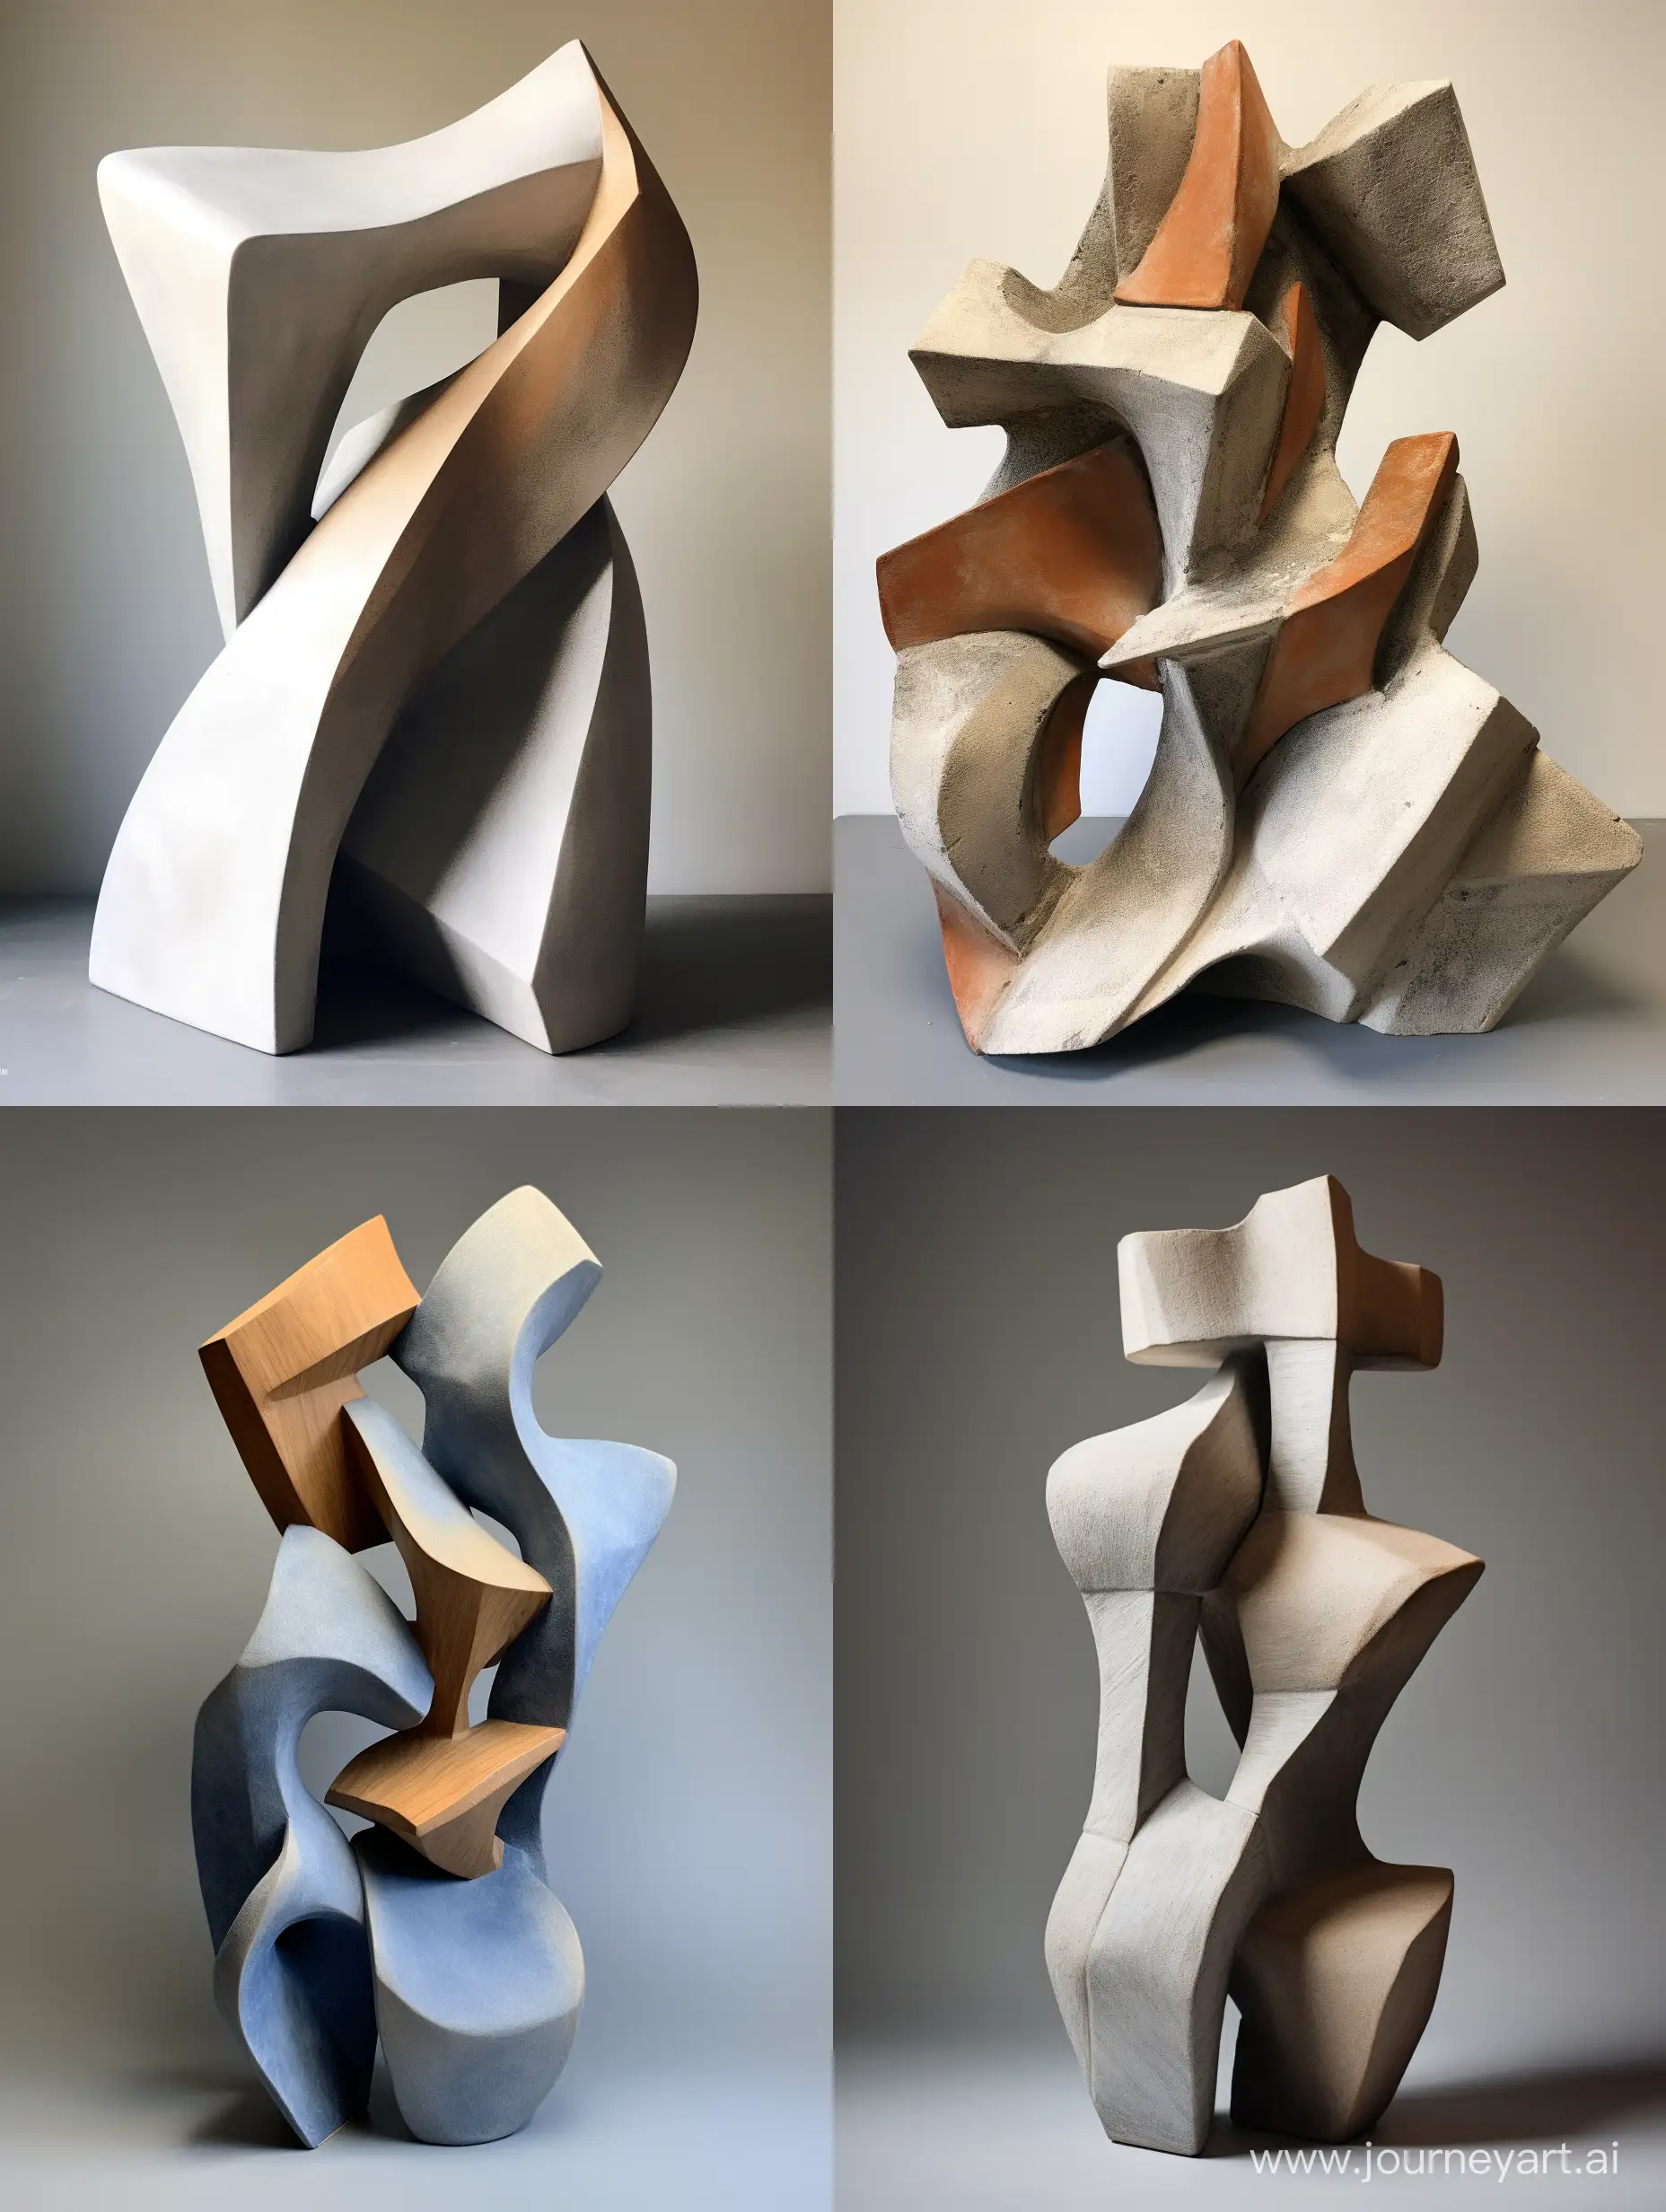 Абстрактная геометрическая скульптура керамика, абстрактные формы, объëмные детали, объëмные элементы, приглушëнные оттенки, в стиле 60-х, острые углы, гигантизм, монументализм